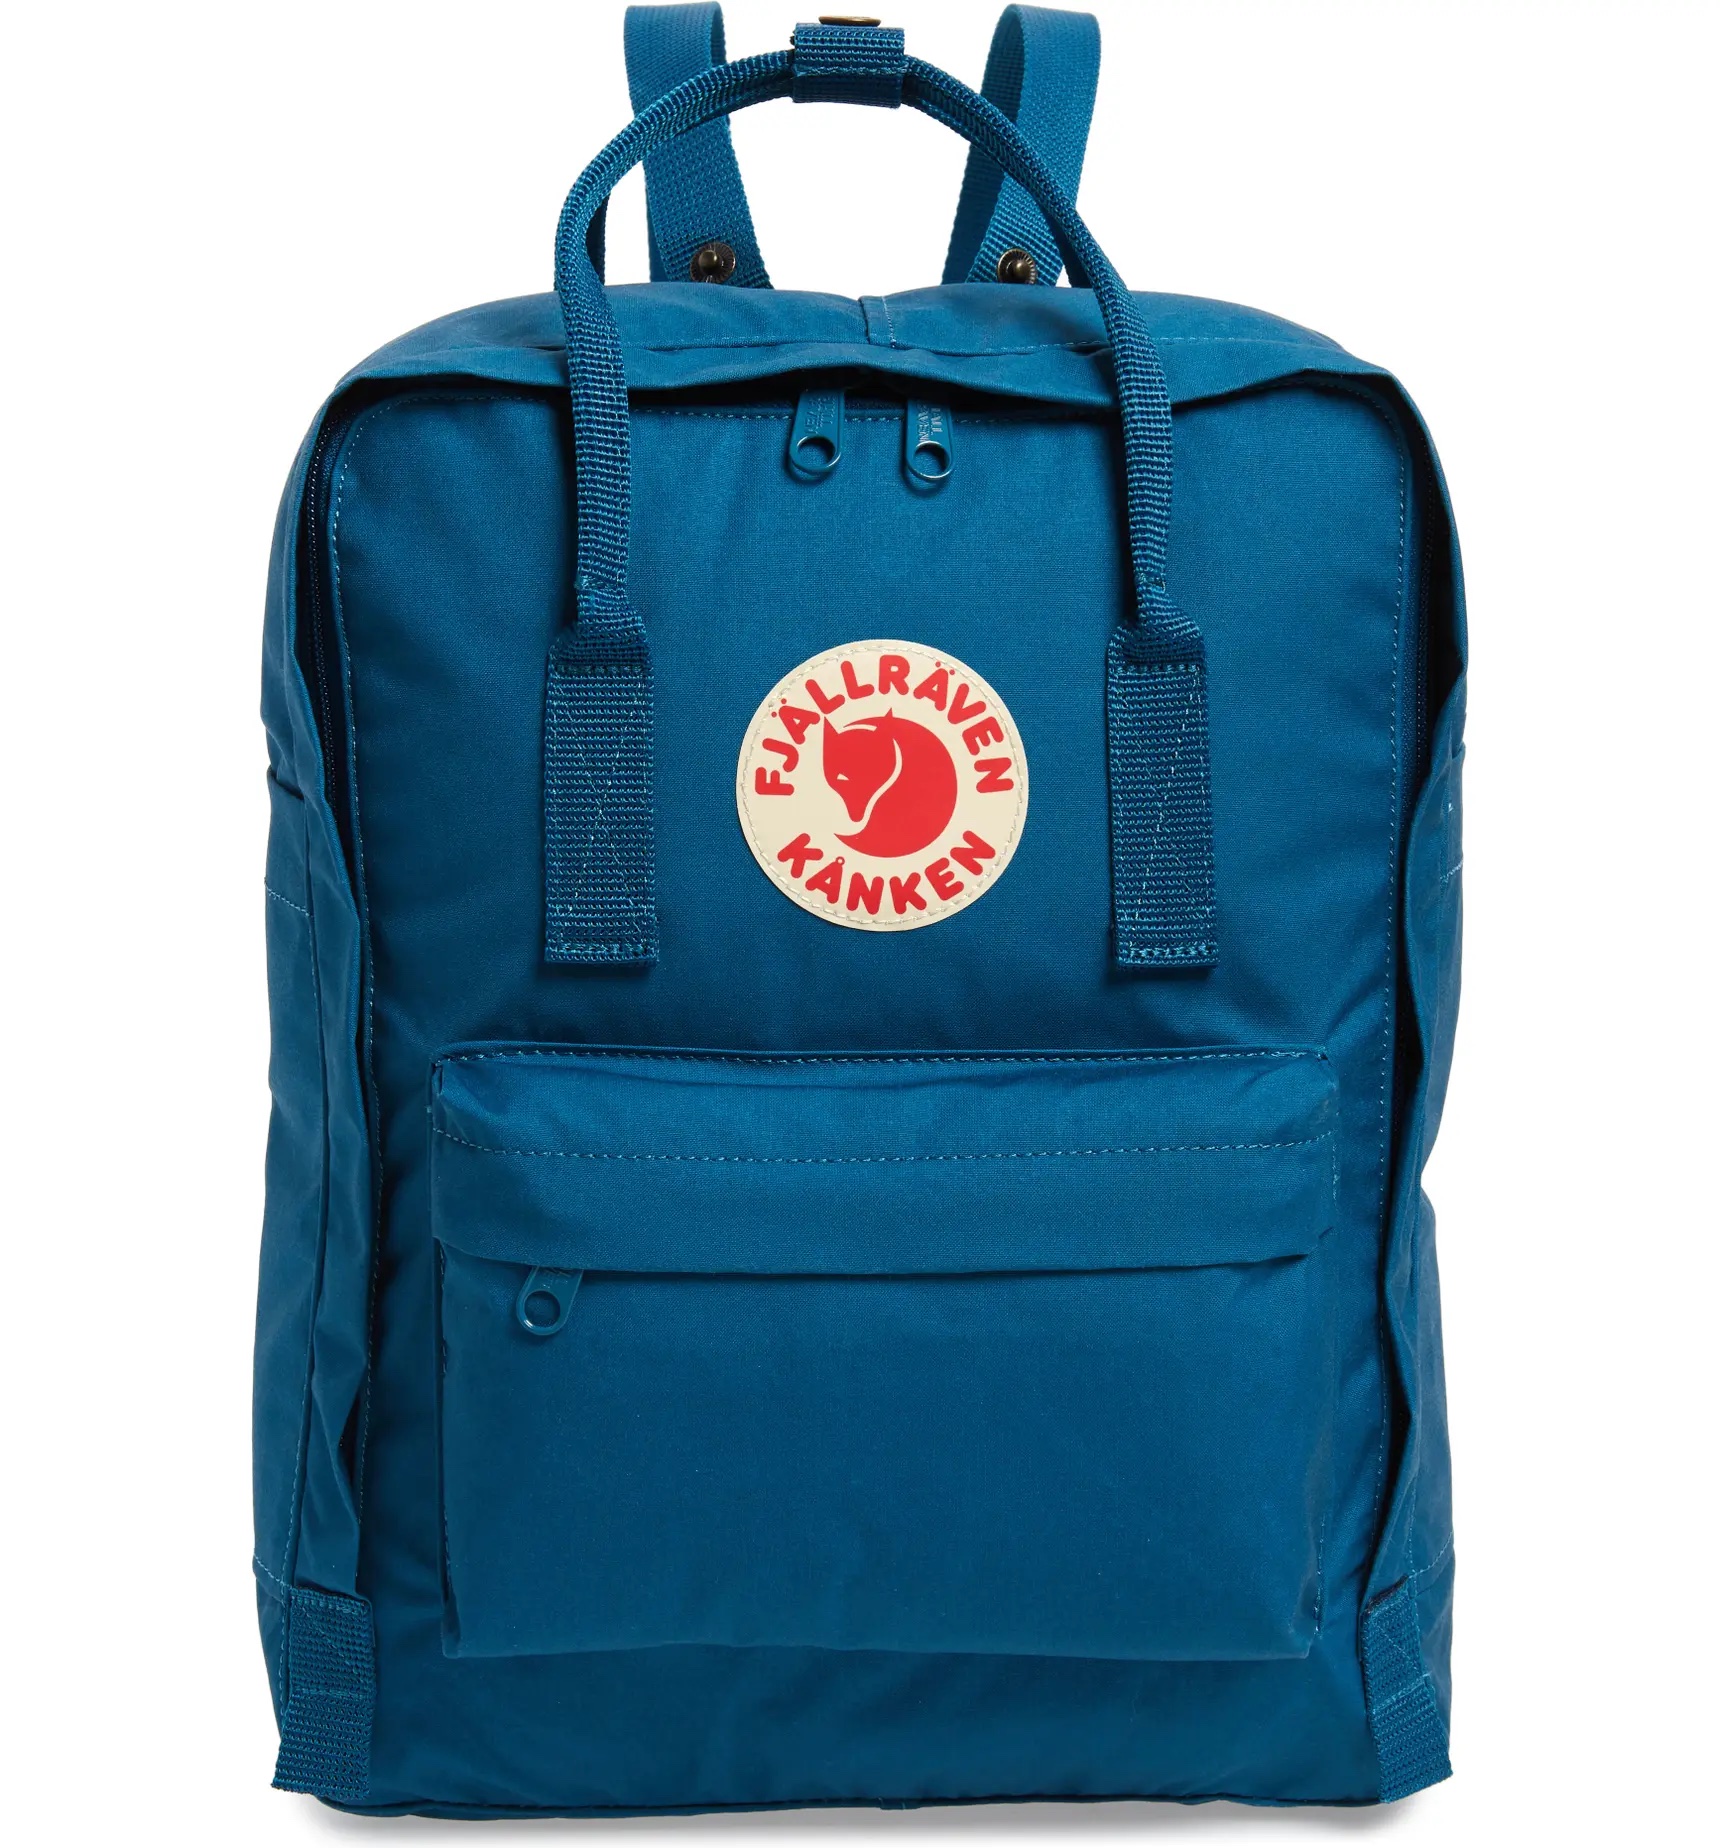 Cool backpacks for teens: Fjällräven by Kånken